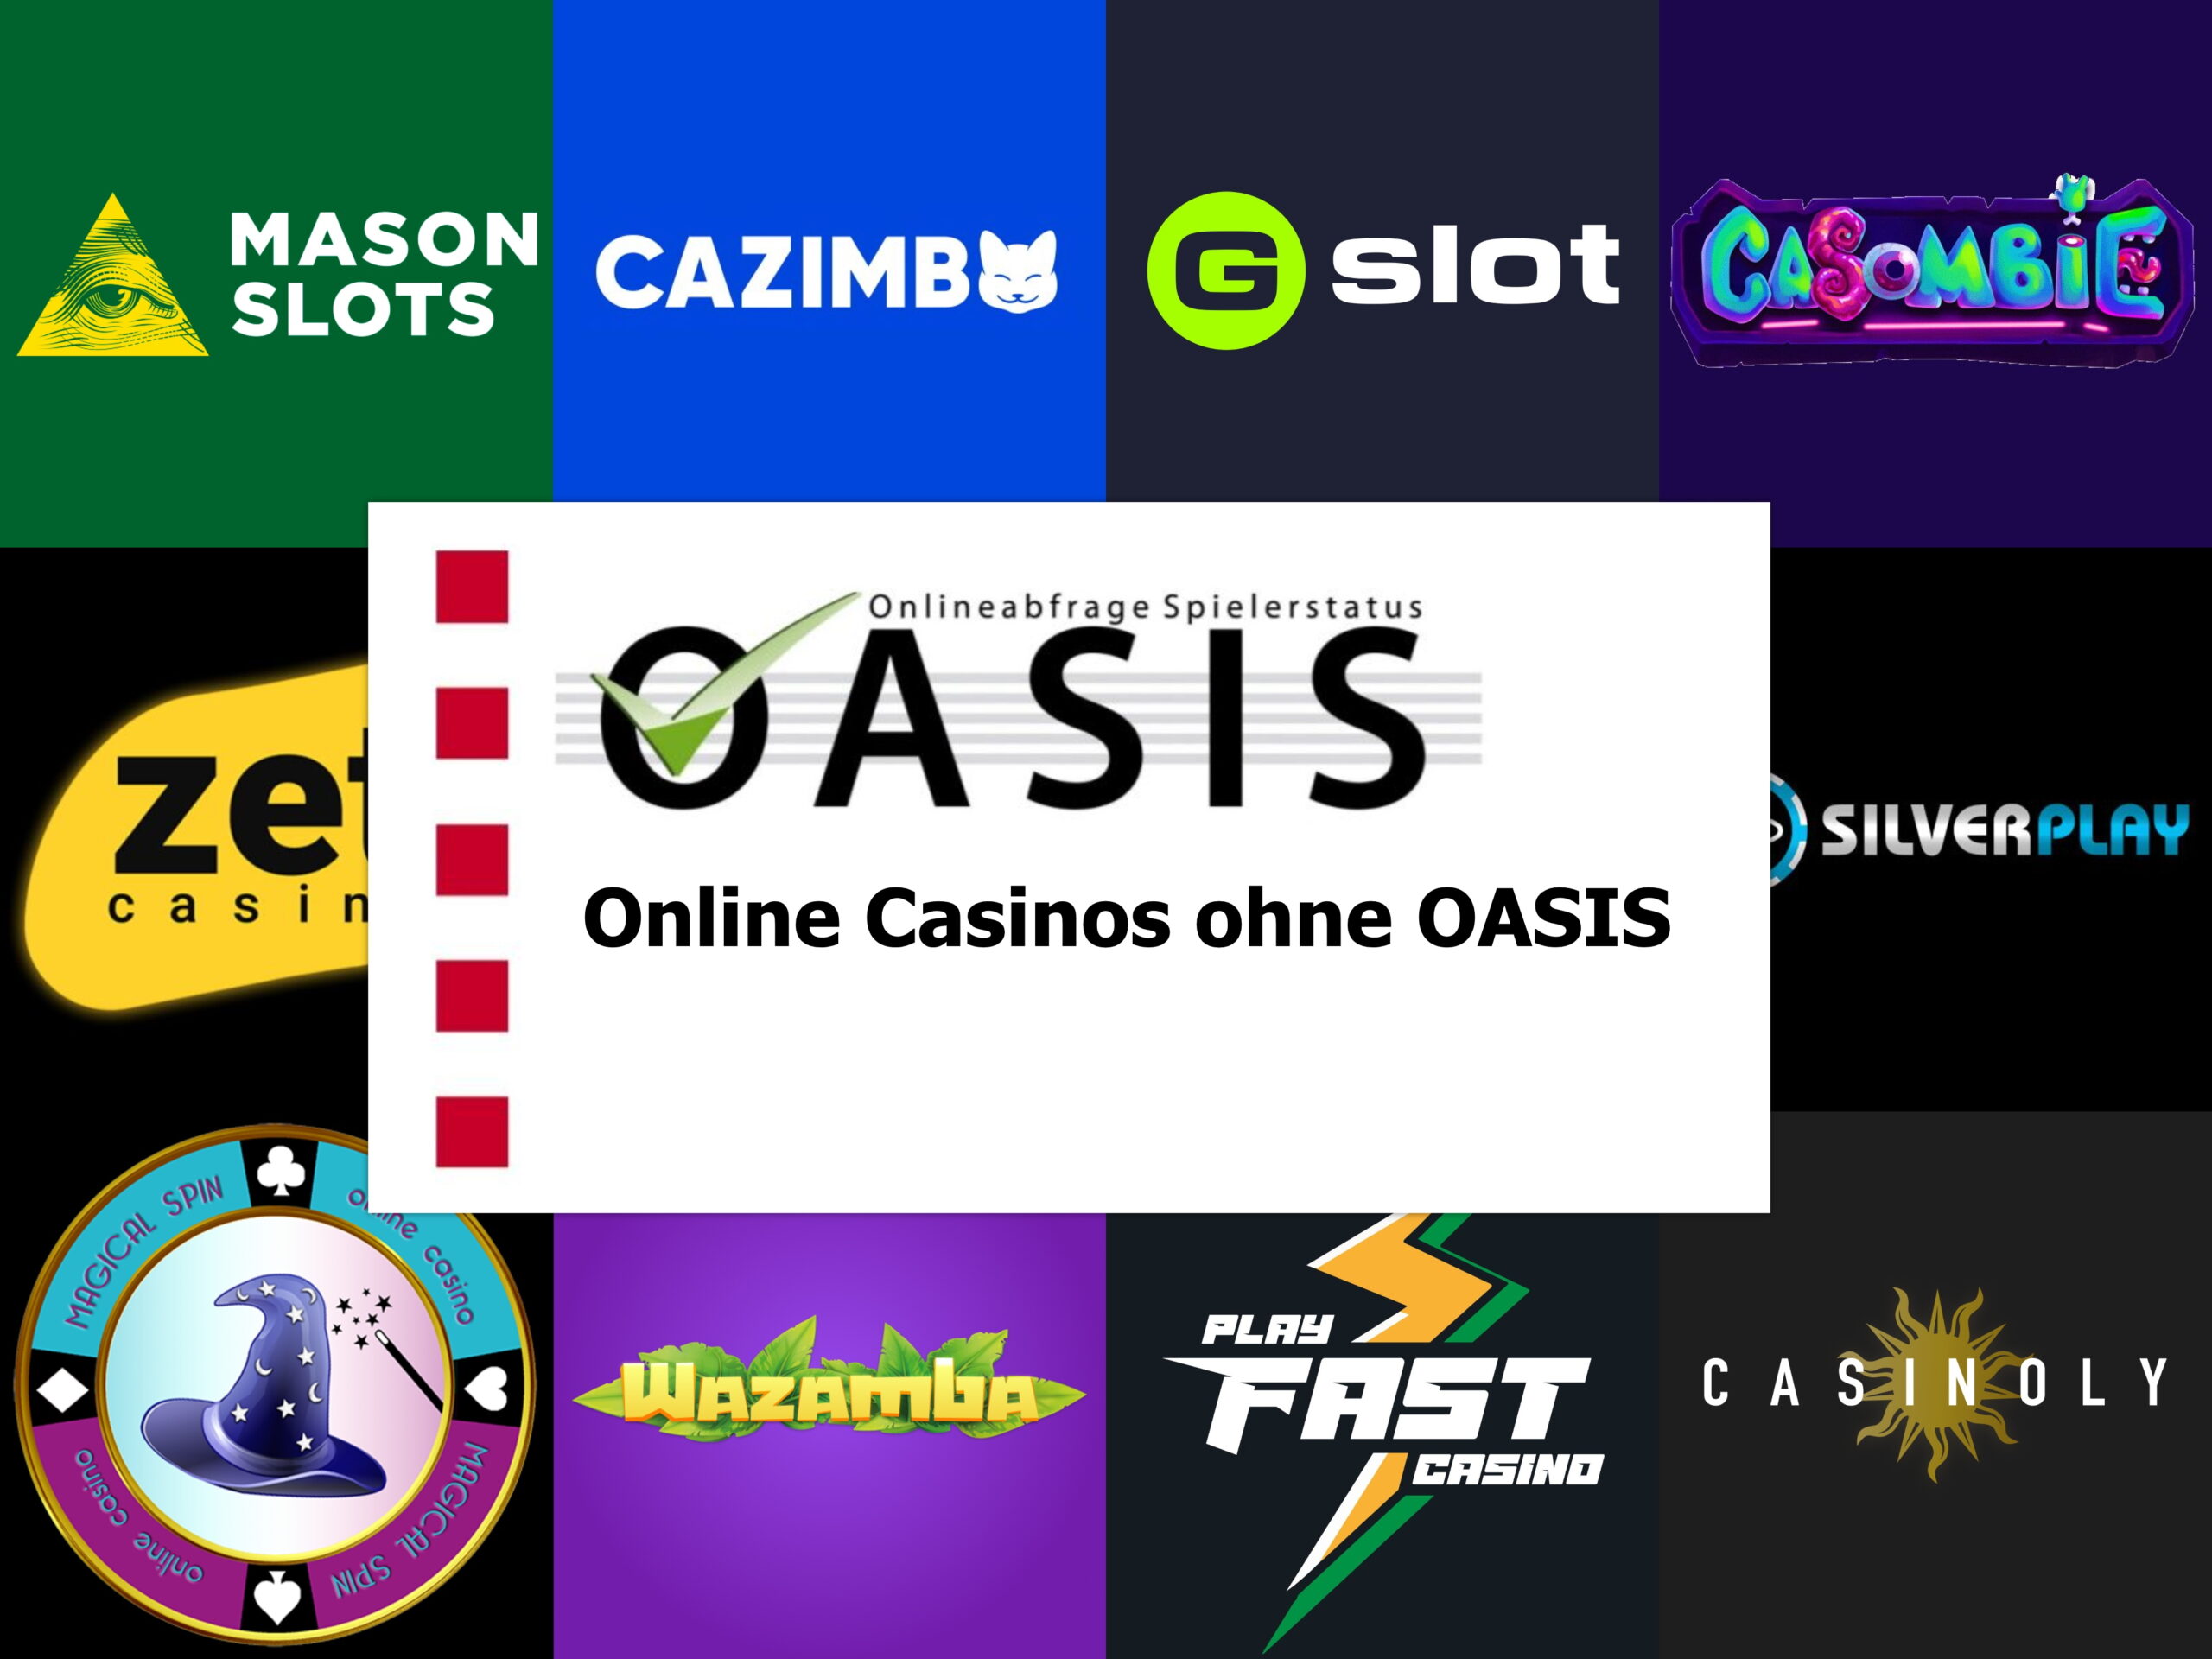 Casino Online überprüft: Was kann man aus den Fehlern anderer lernen?